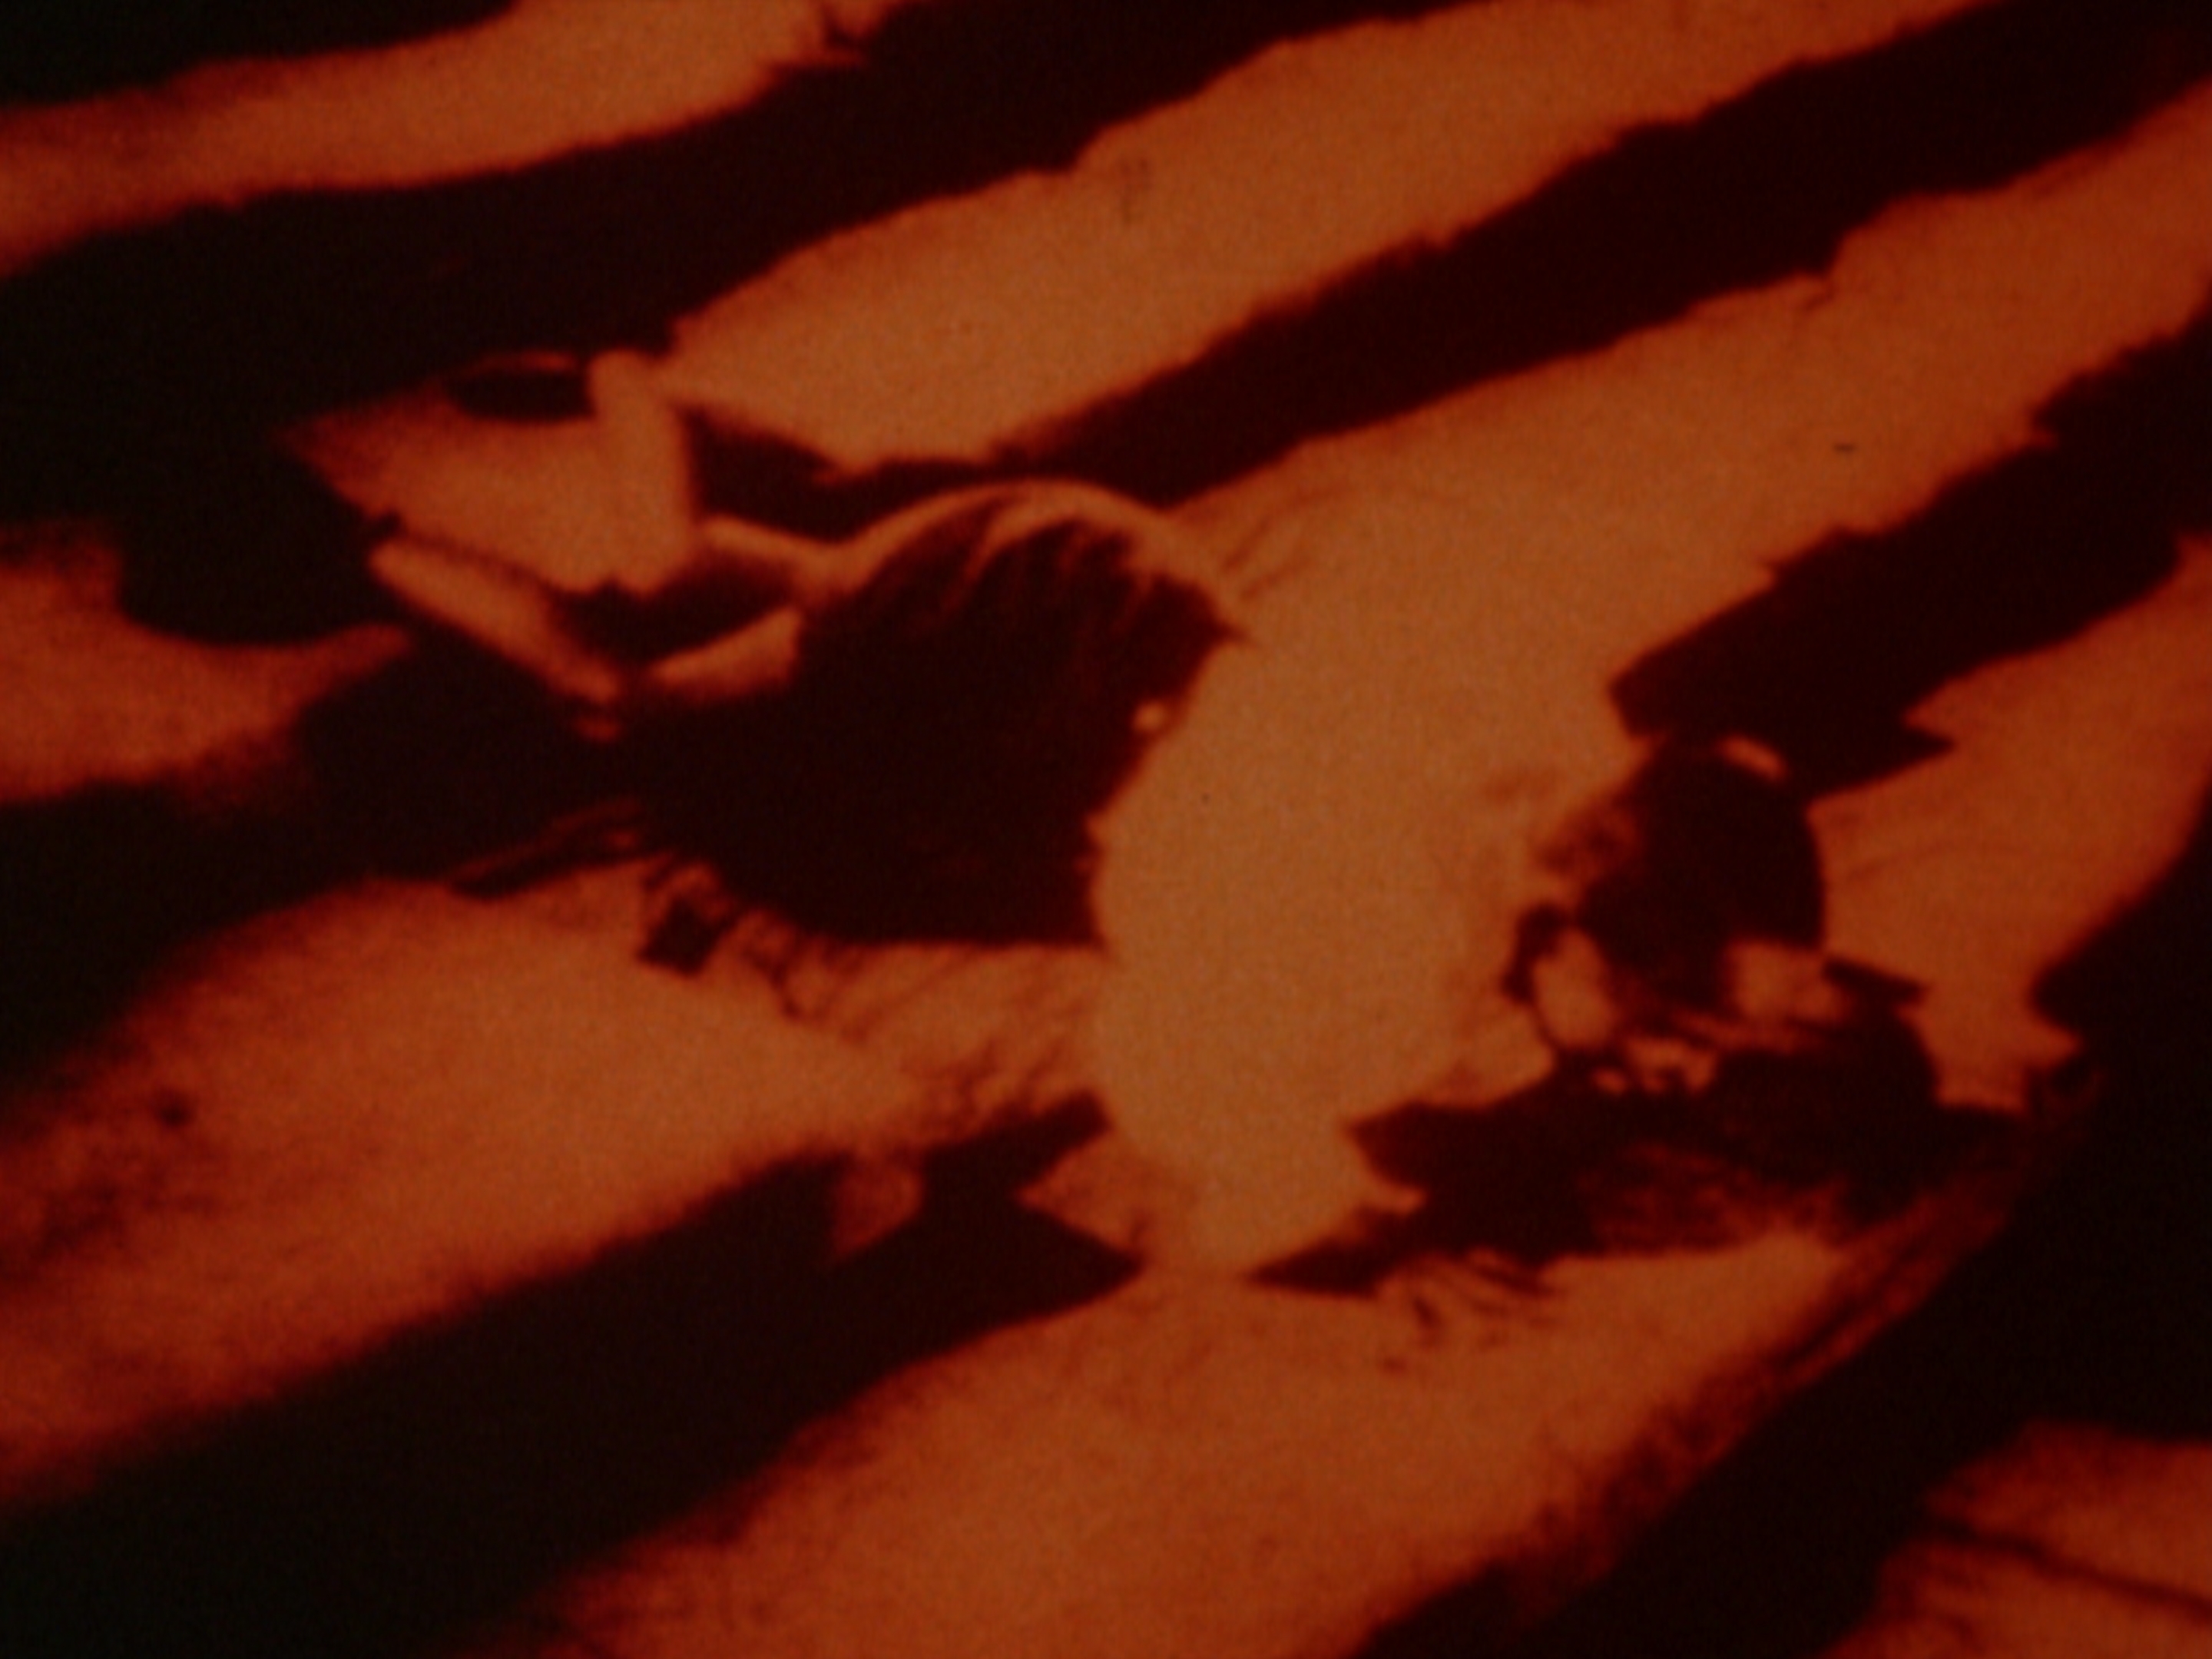 Брессон, Мельвиль и Маркер: знакомимся с кинопрограммой «Тени и свет» в «Гараже» (фото 9)